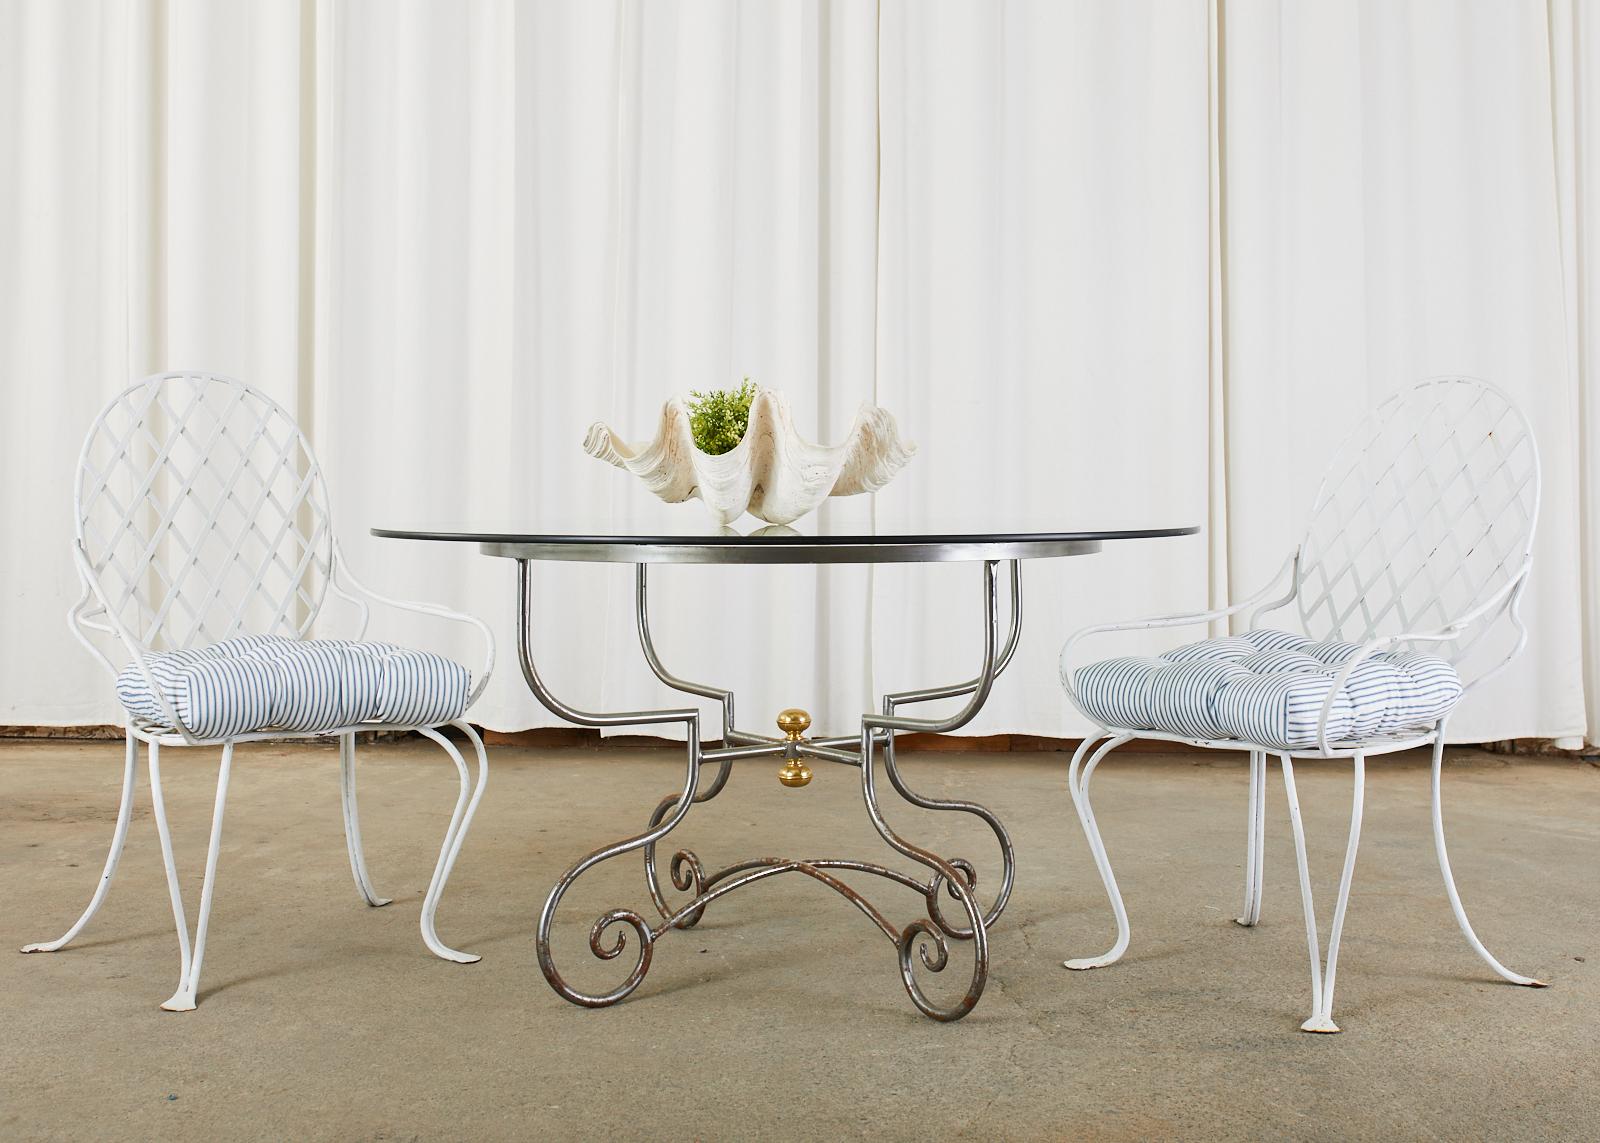 Table de salle à manger en fer et laiton de style français, idéale pour le patio ou le jardin. La table ronde est dotée d'une base en fer de style table à pâtisserie, composée de quatre pieds gracieusement incurvés se terminant par des pieds à